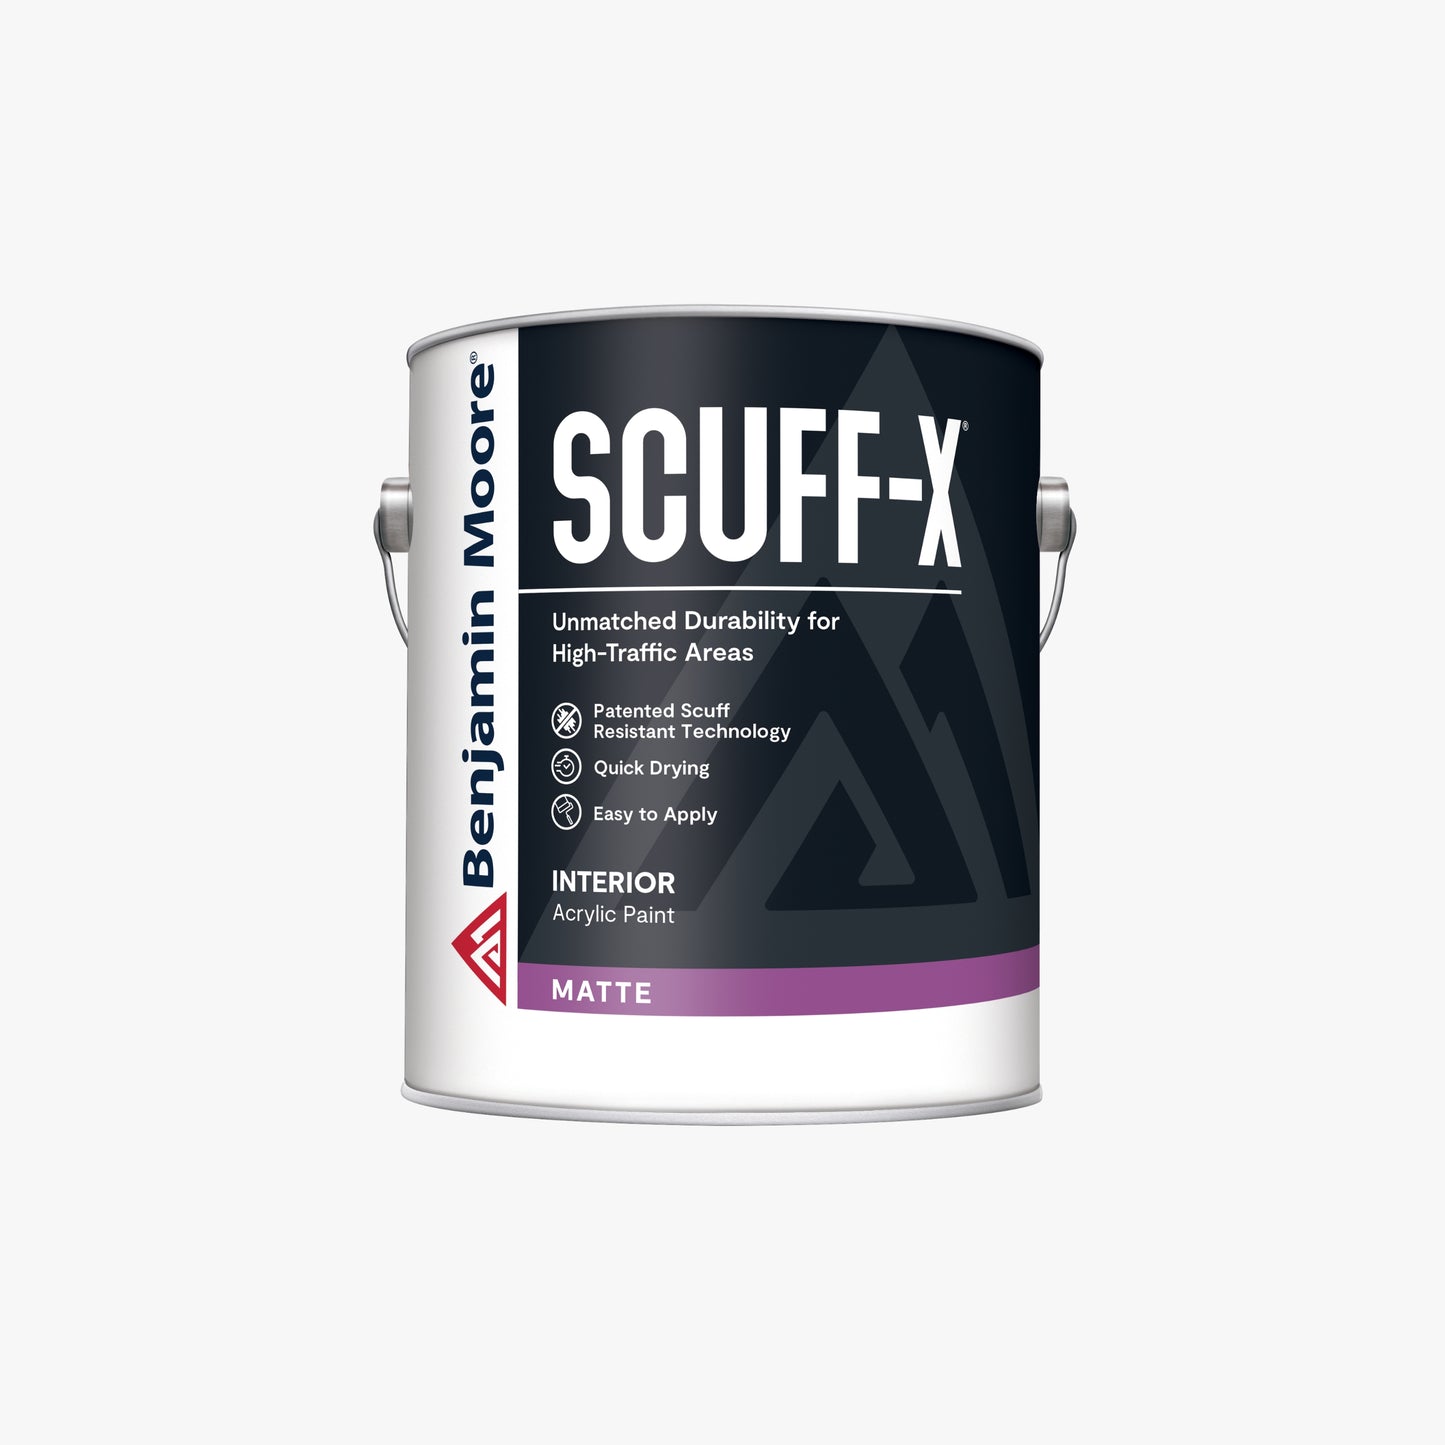 SCUFF-X 抗刮擦室内油